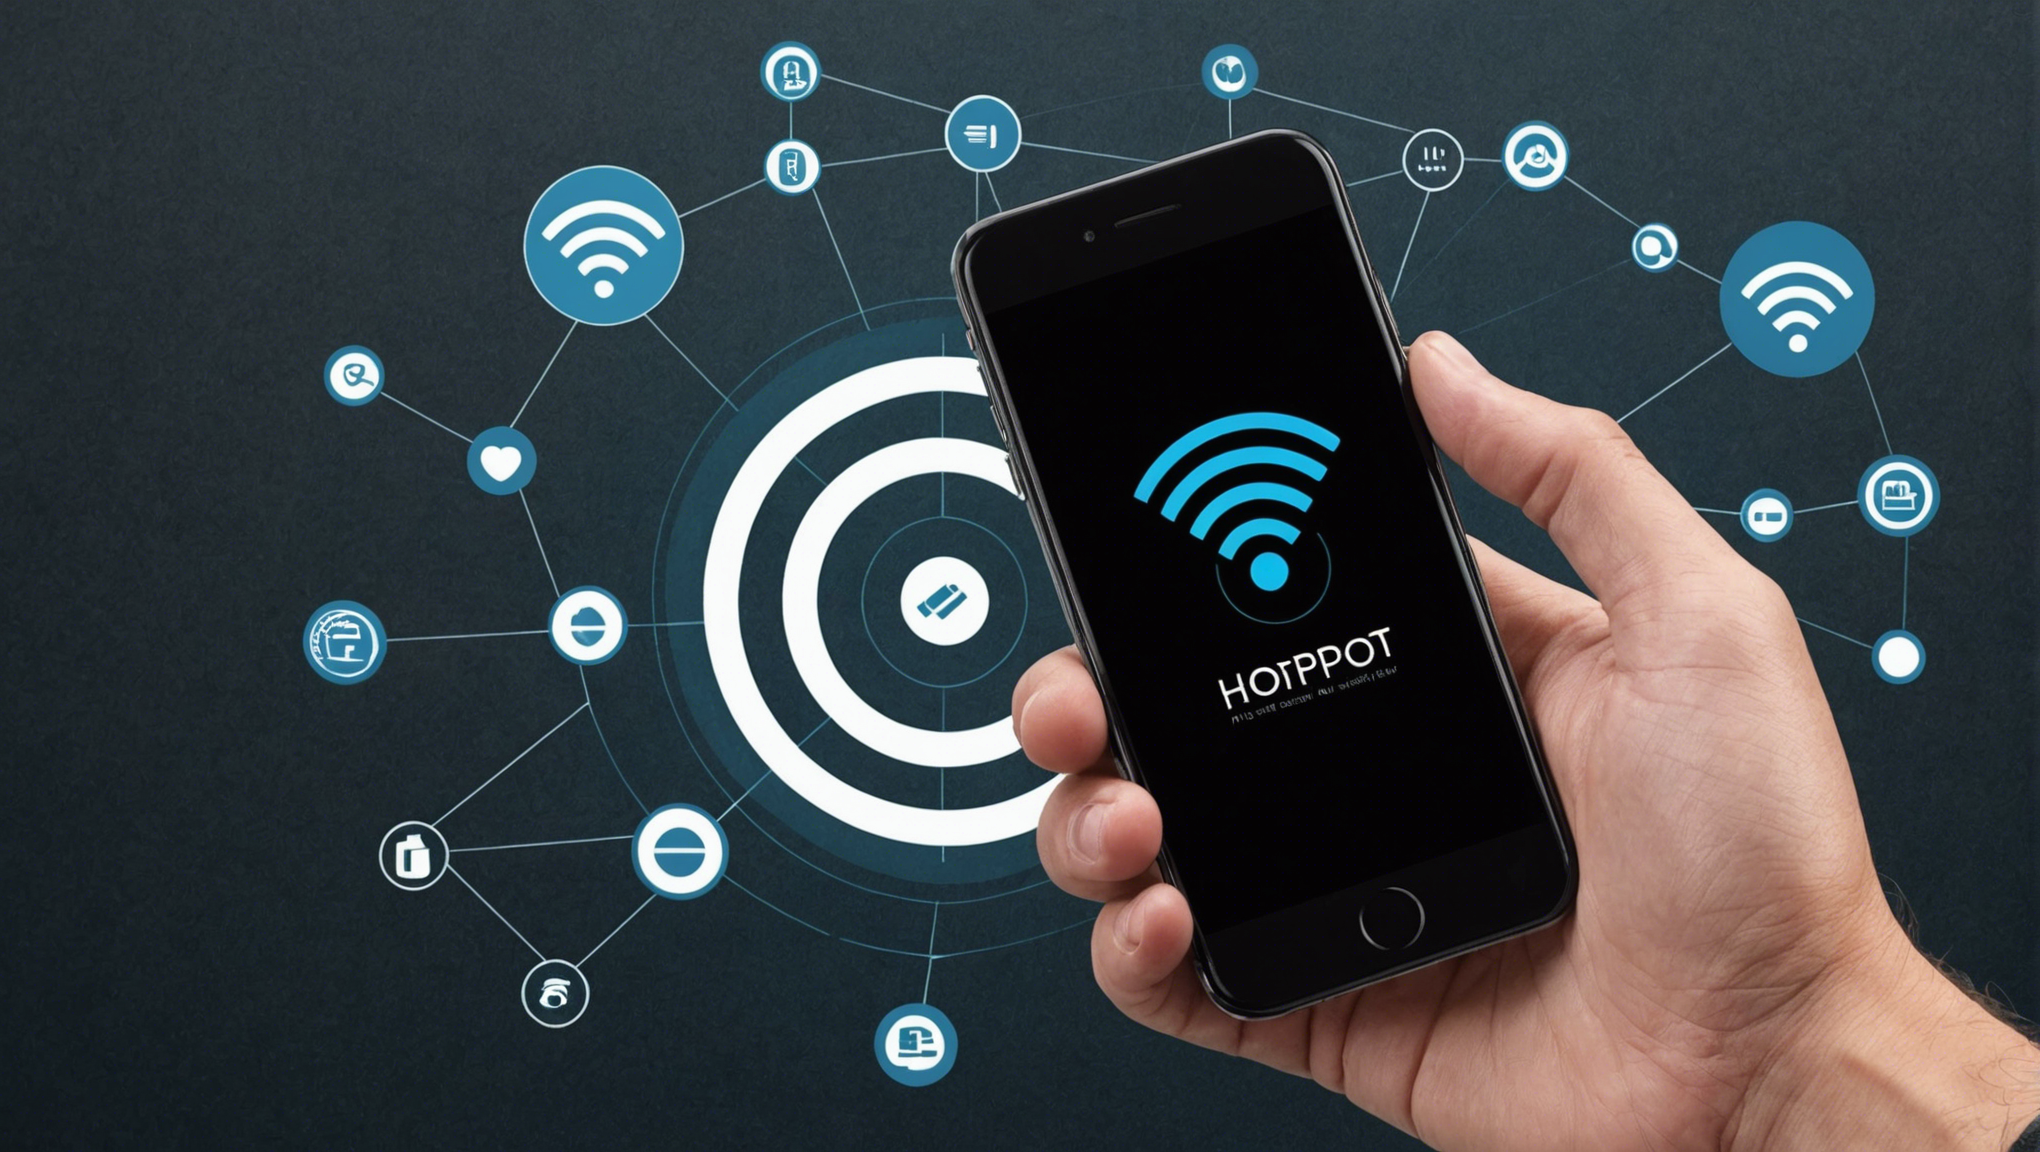 découvrez comment le réseau hotspot peut apporter une connexion wi-fi rapide et sécurisée à vos appareils grâce à ses fonctionnalités avancées.